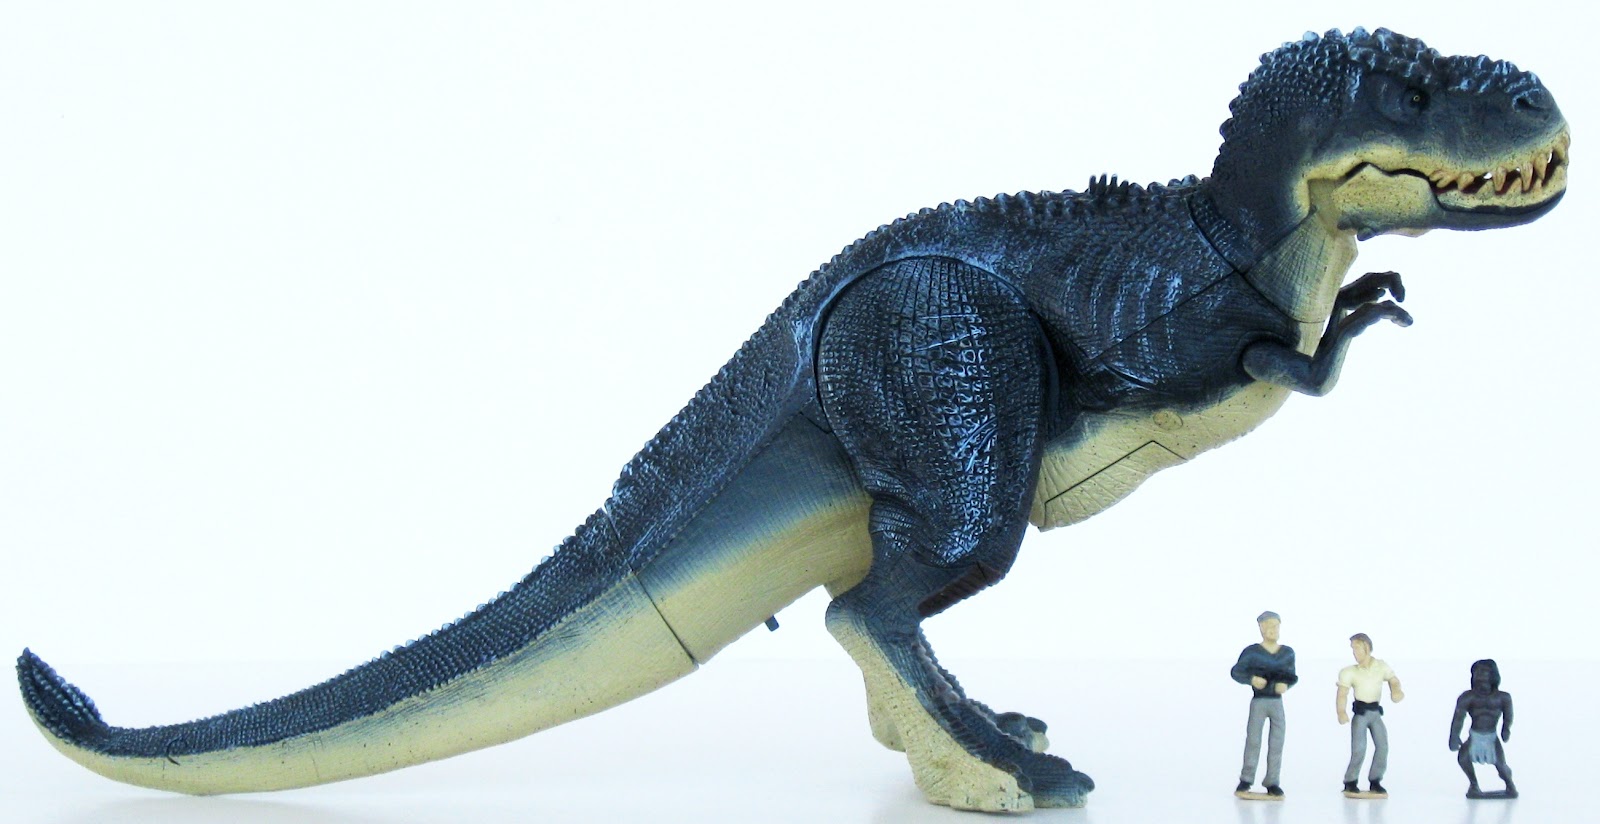 King Kong Vastatosaurus Rex Toy - Wow Blog